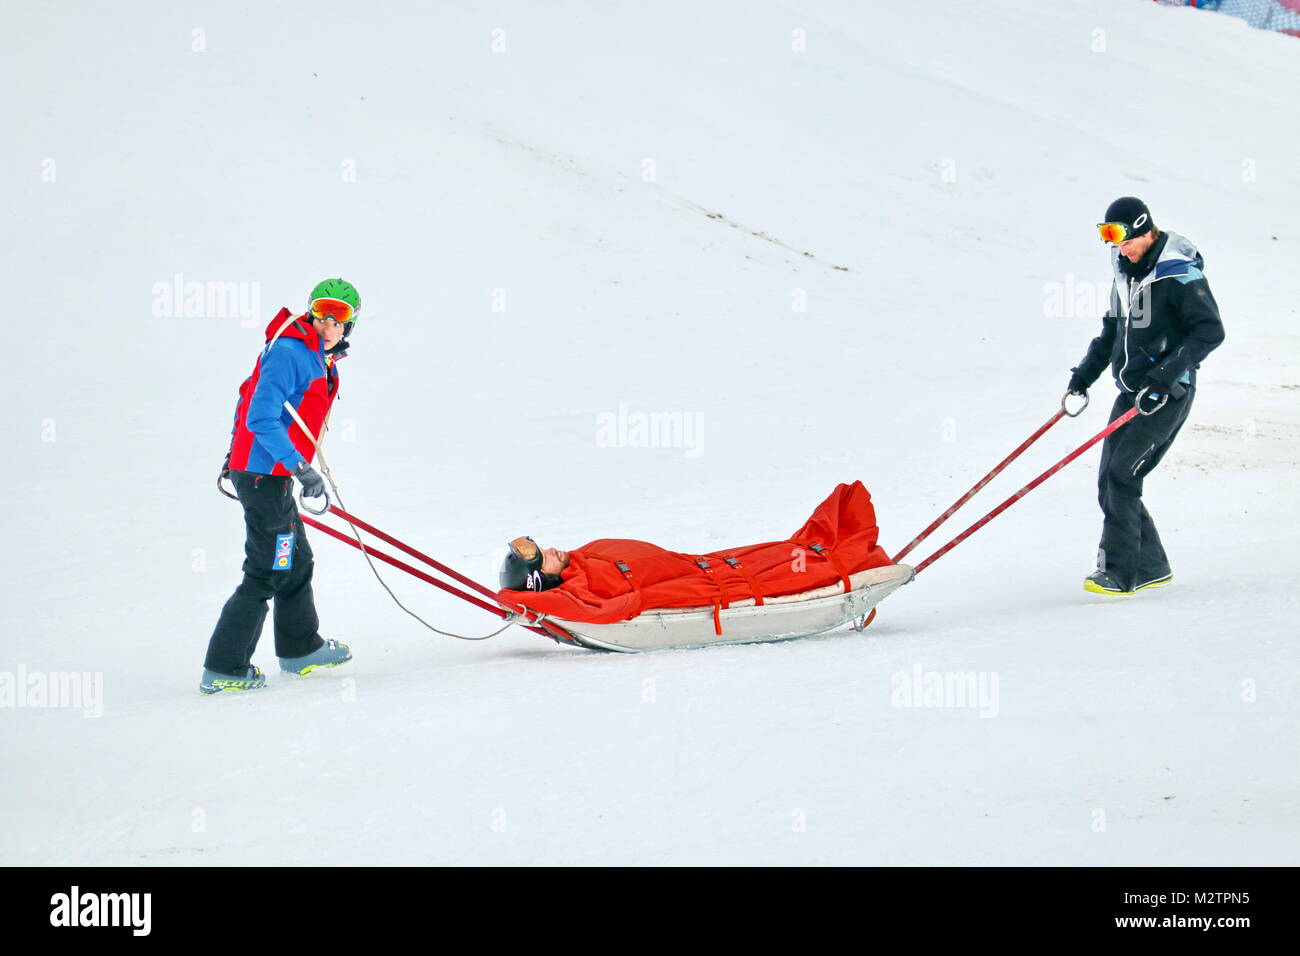 Abtransport: Überschattet wurde der Snowboard-Weltcup vom schweren Sturz des Spaniers Laro Herrero, der hier von der Bergwacht mit dem Akkja abtransportiert wird. FIS Weltcup Snowboard SBX 2016 Feldberg Stock Photo